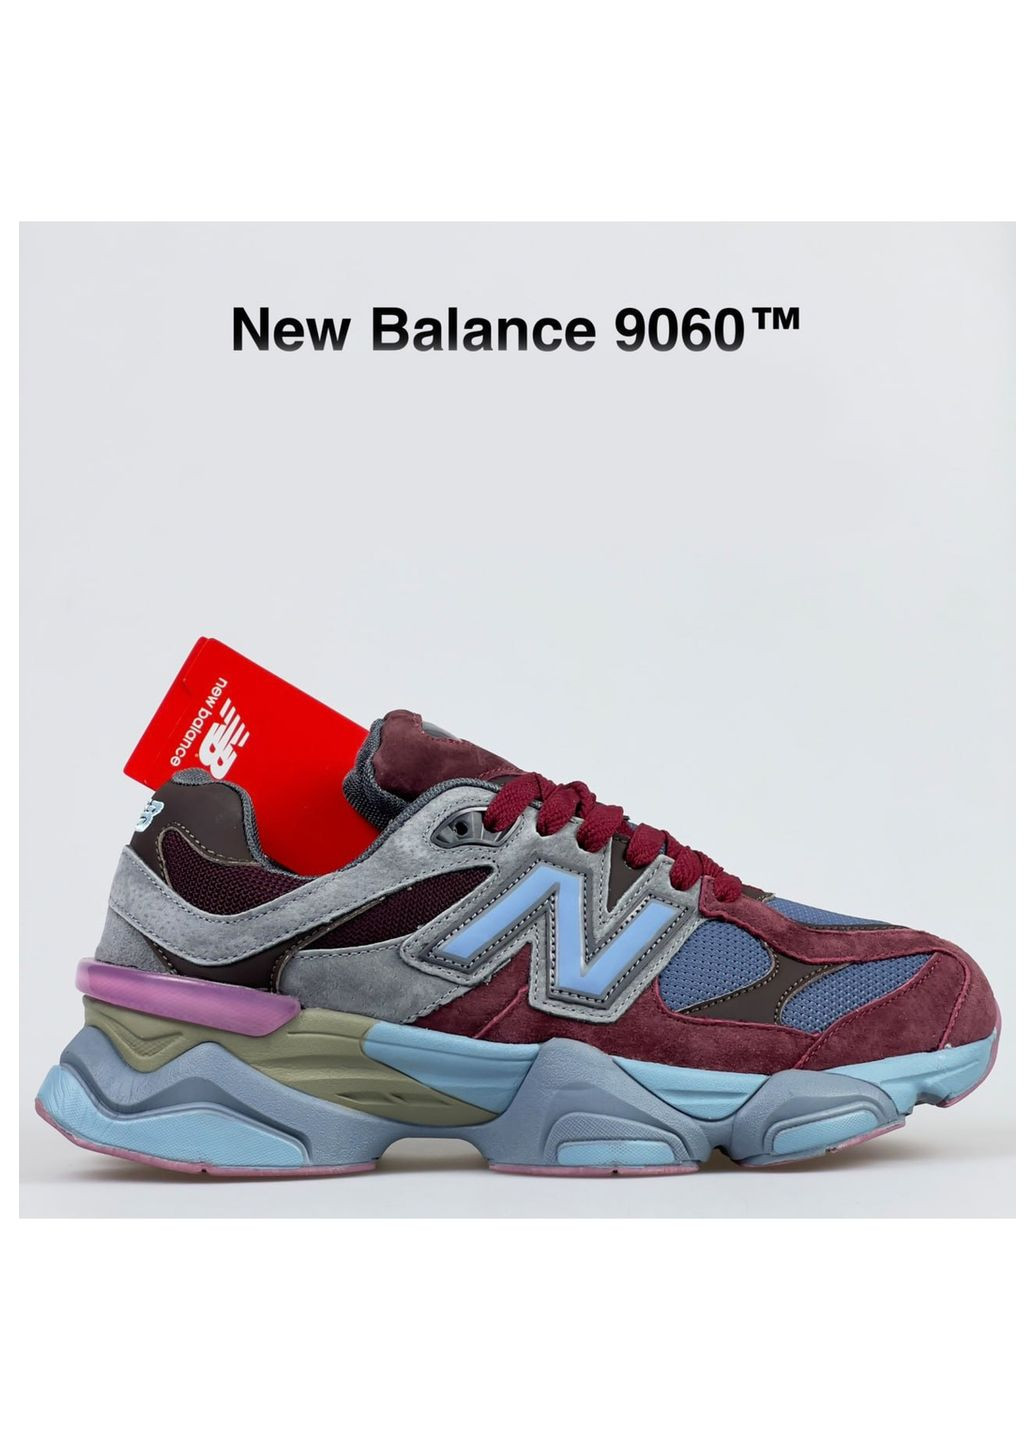 Цветные всесезонные кроссовки, вьетнам New Balance 9060